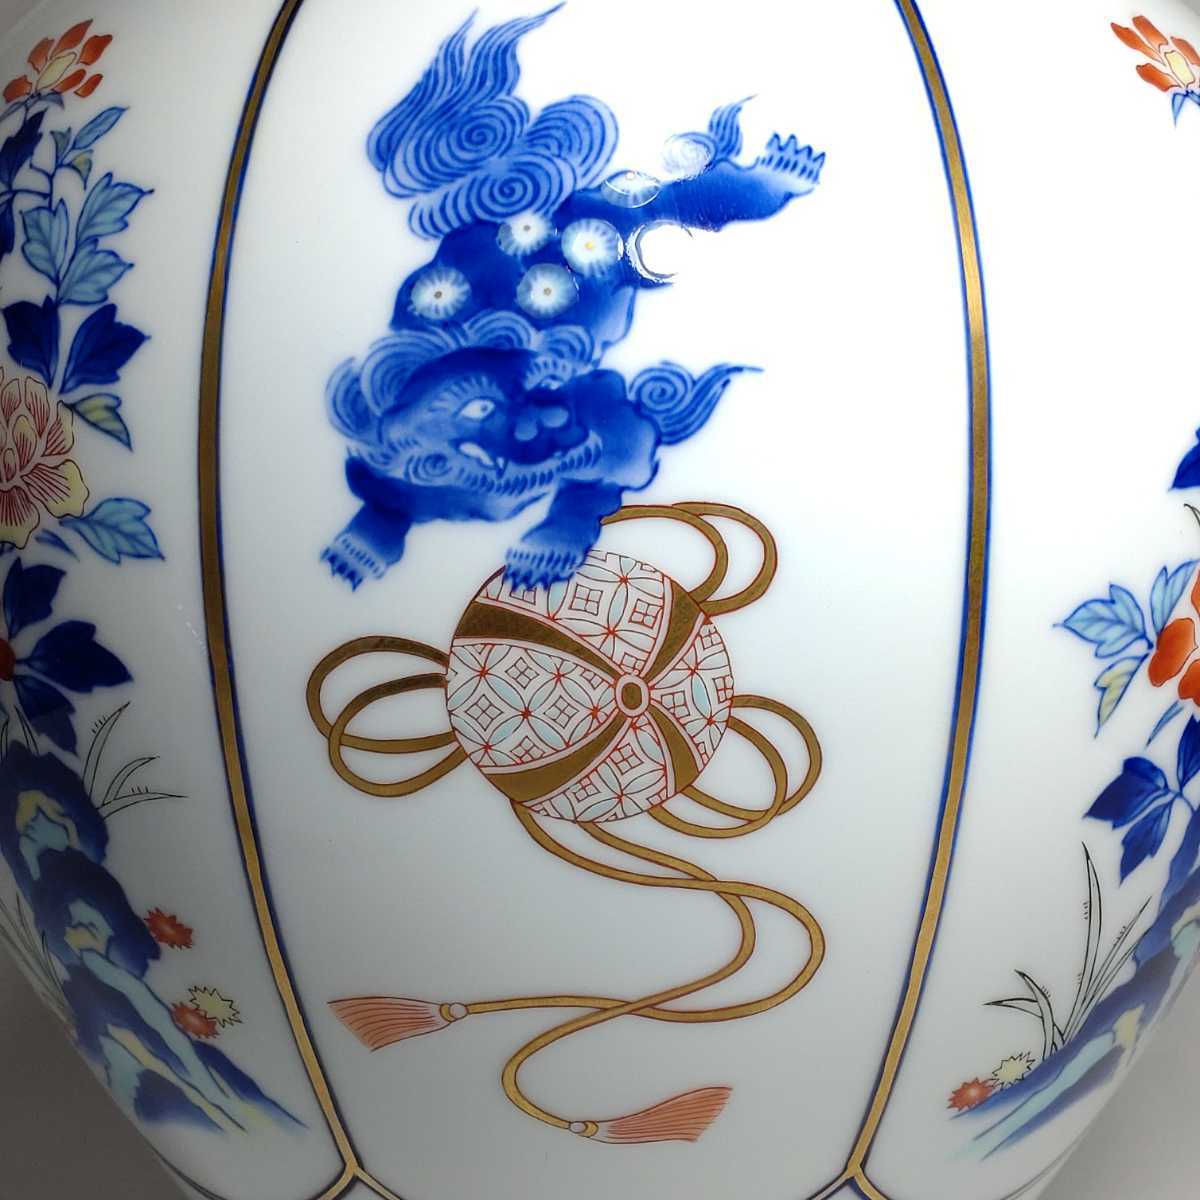 香蘭社 磁芸工房謹製 染錦 八方割 玉乗獅子牡丹模様 花瓶 高さ約31cm